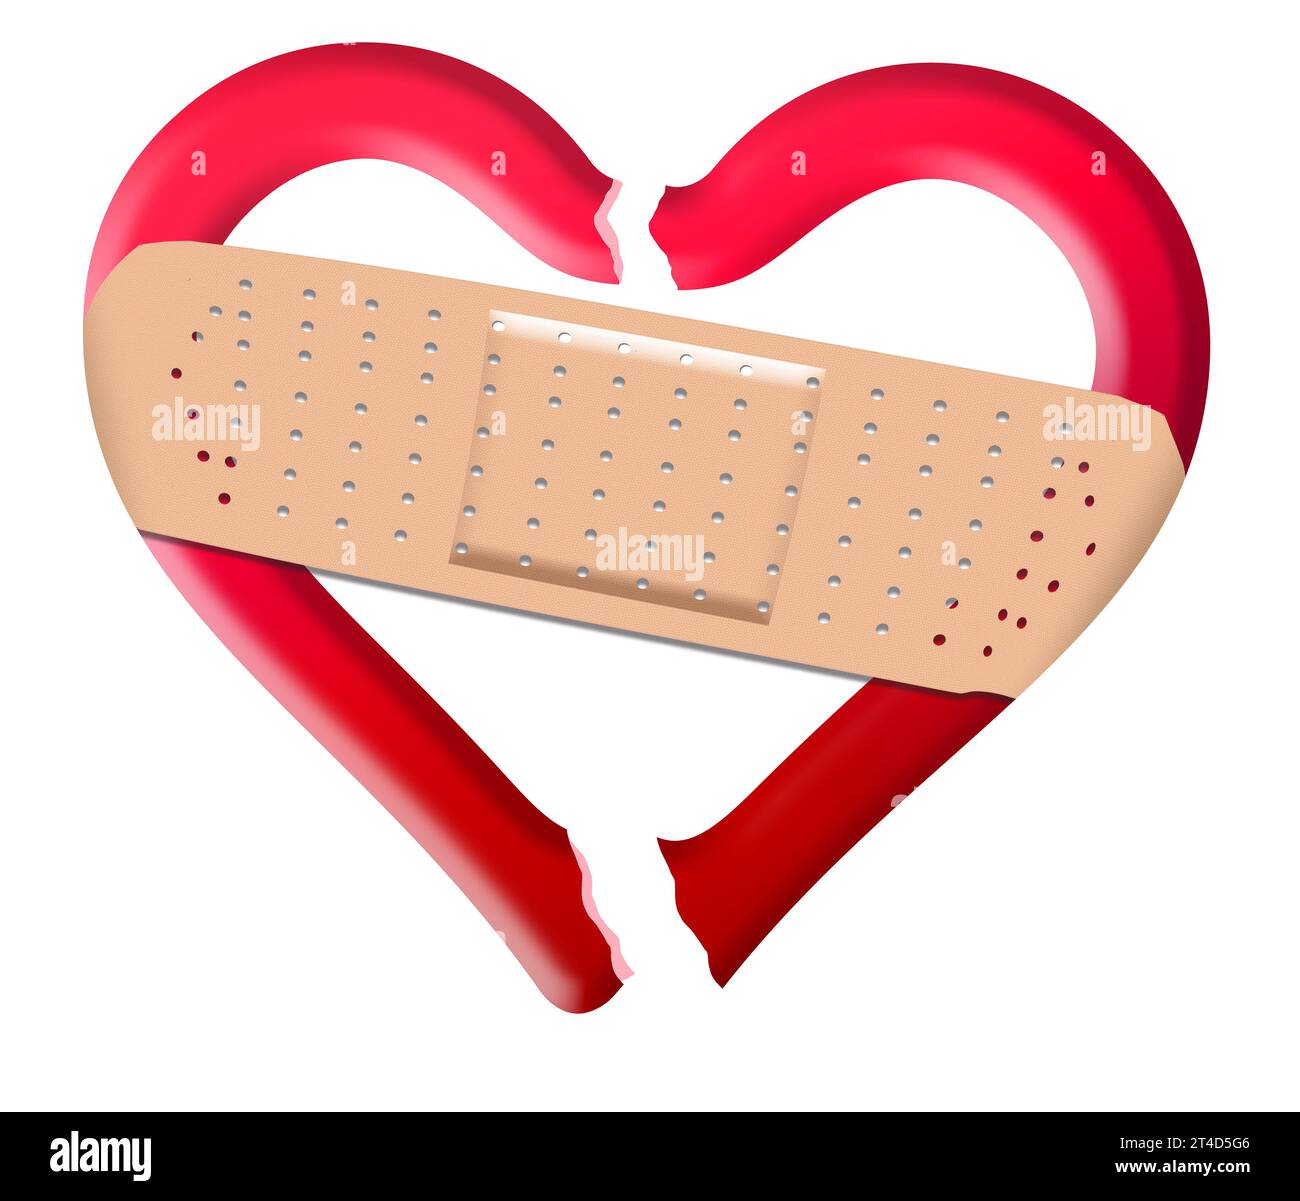 Réparer un cœur brisé avec un pansement Photo Stock - Alamy